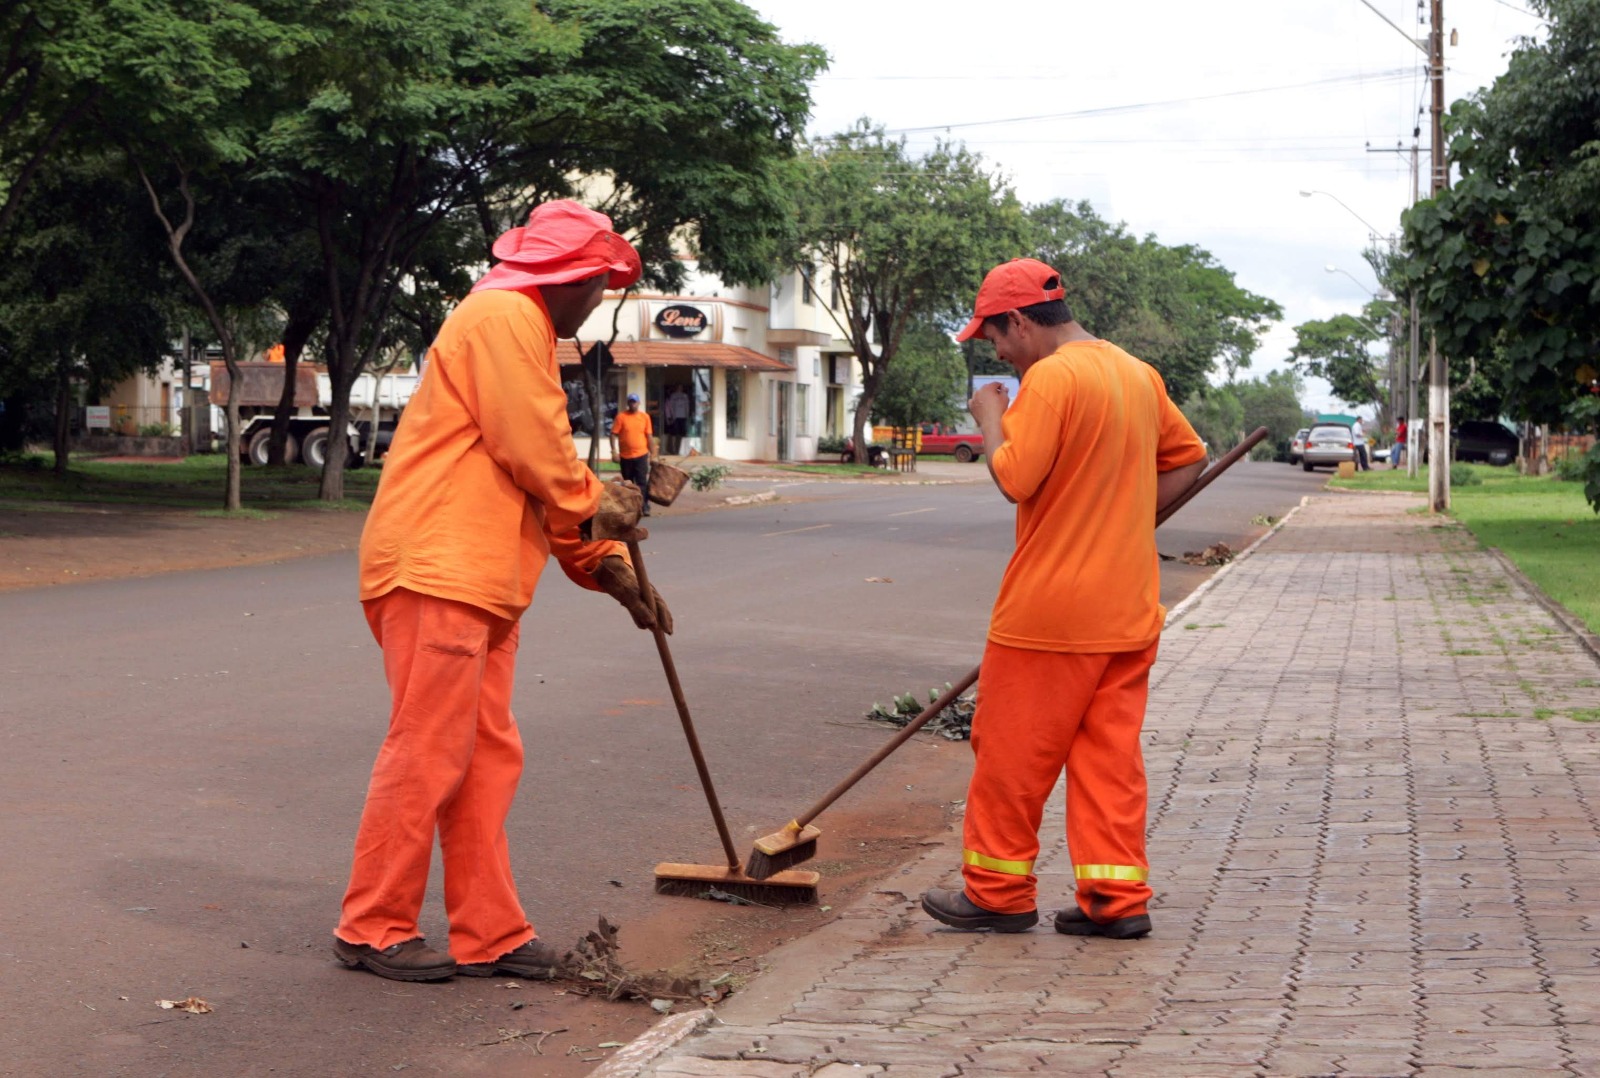 Indicação propõe fortalecimento de pequenos negócios através da disponibilização de serviços manutenção e limpeza urbana